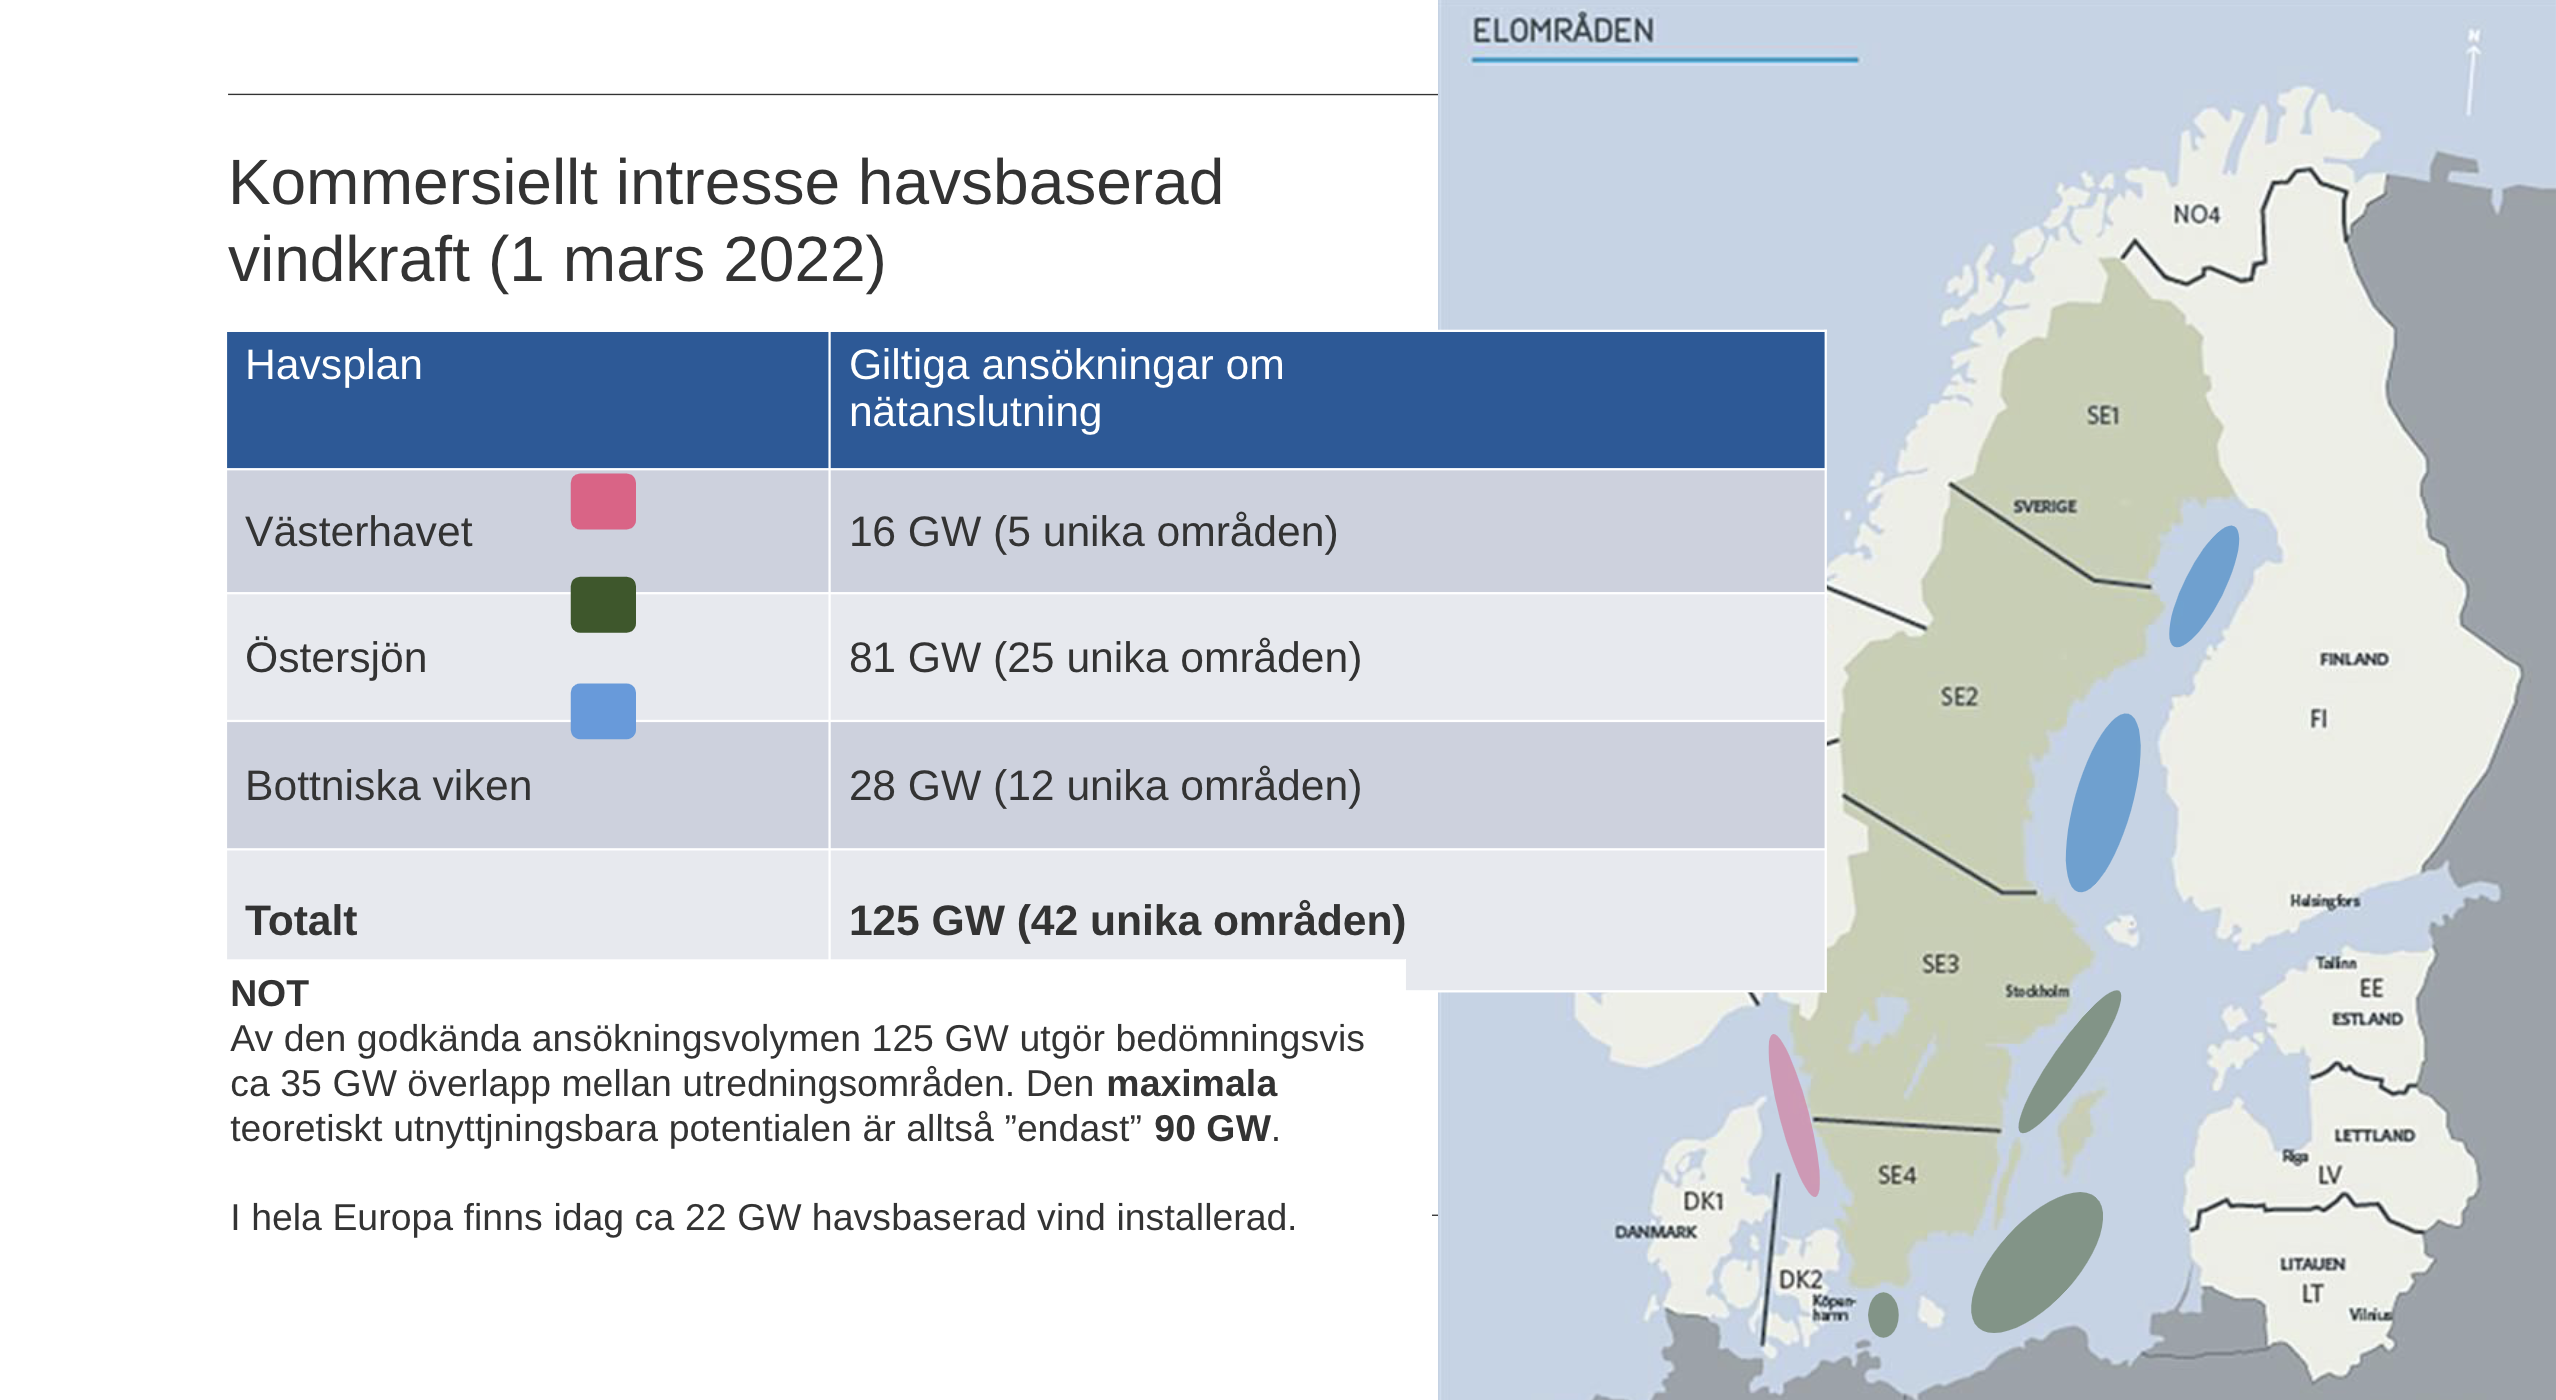 Totalt finns ansökningar på 125 GW havsvindkraft hos SvK. Källa: SvK